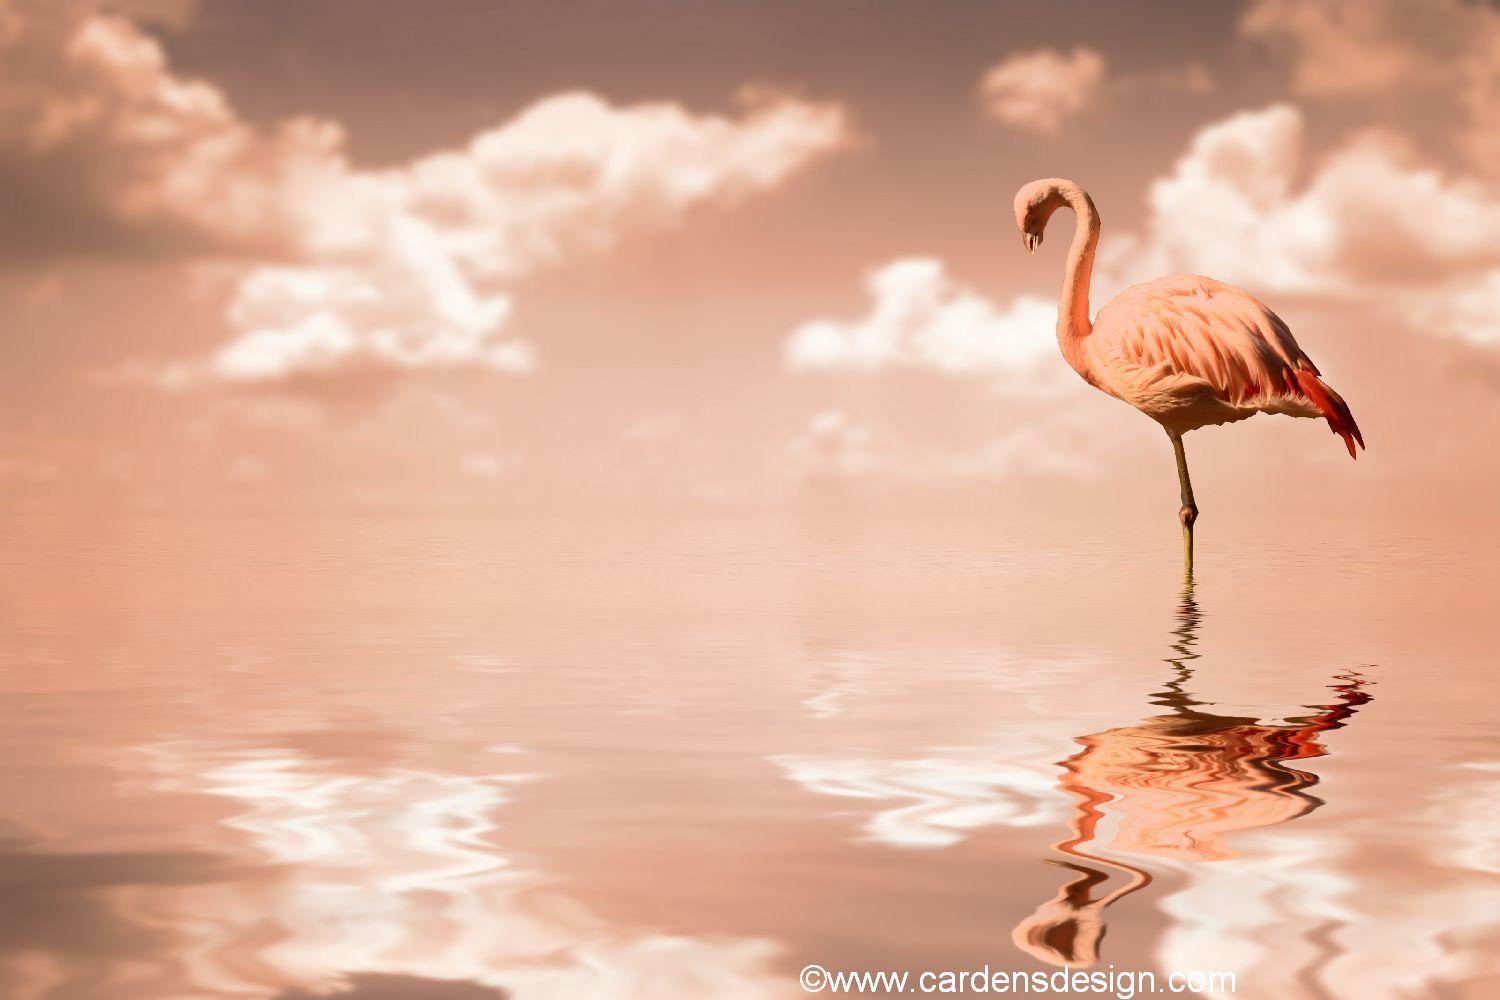 Hình nền chim hồng hạc 1500x1000.  Hình nền Flamingo màu hồng, Hình nền Flop Flop Flamingo và Hình nền Flamingo Las Vegas